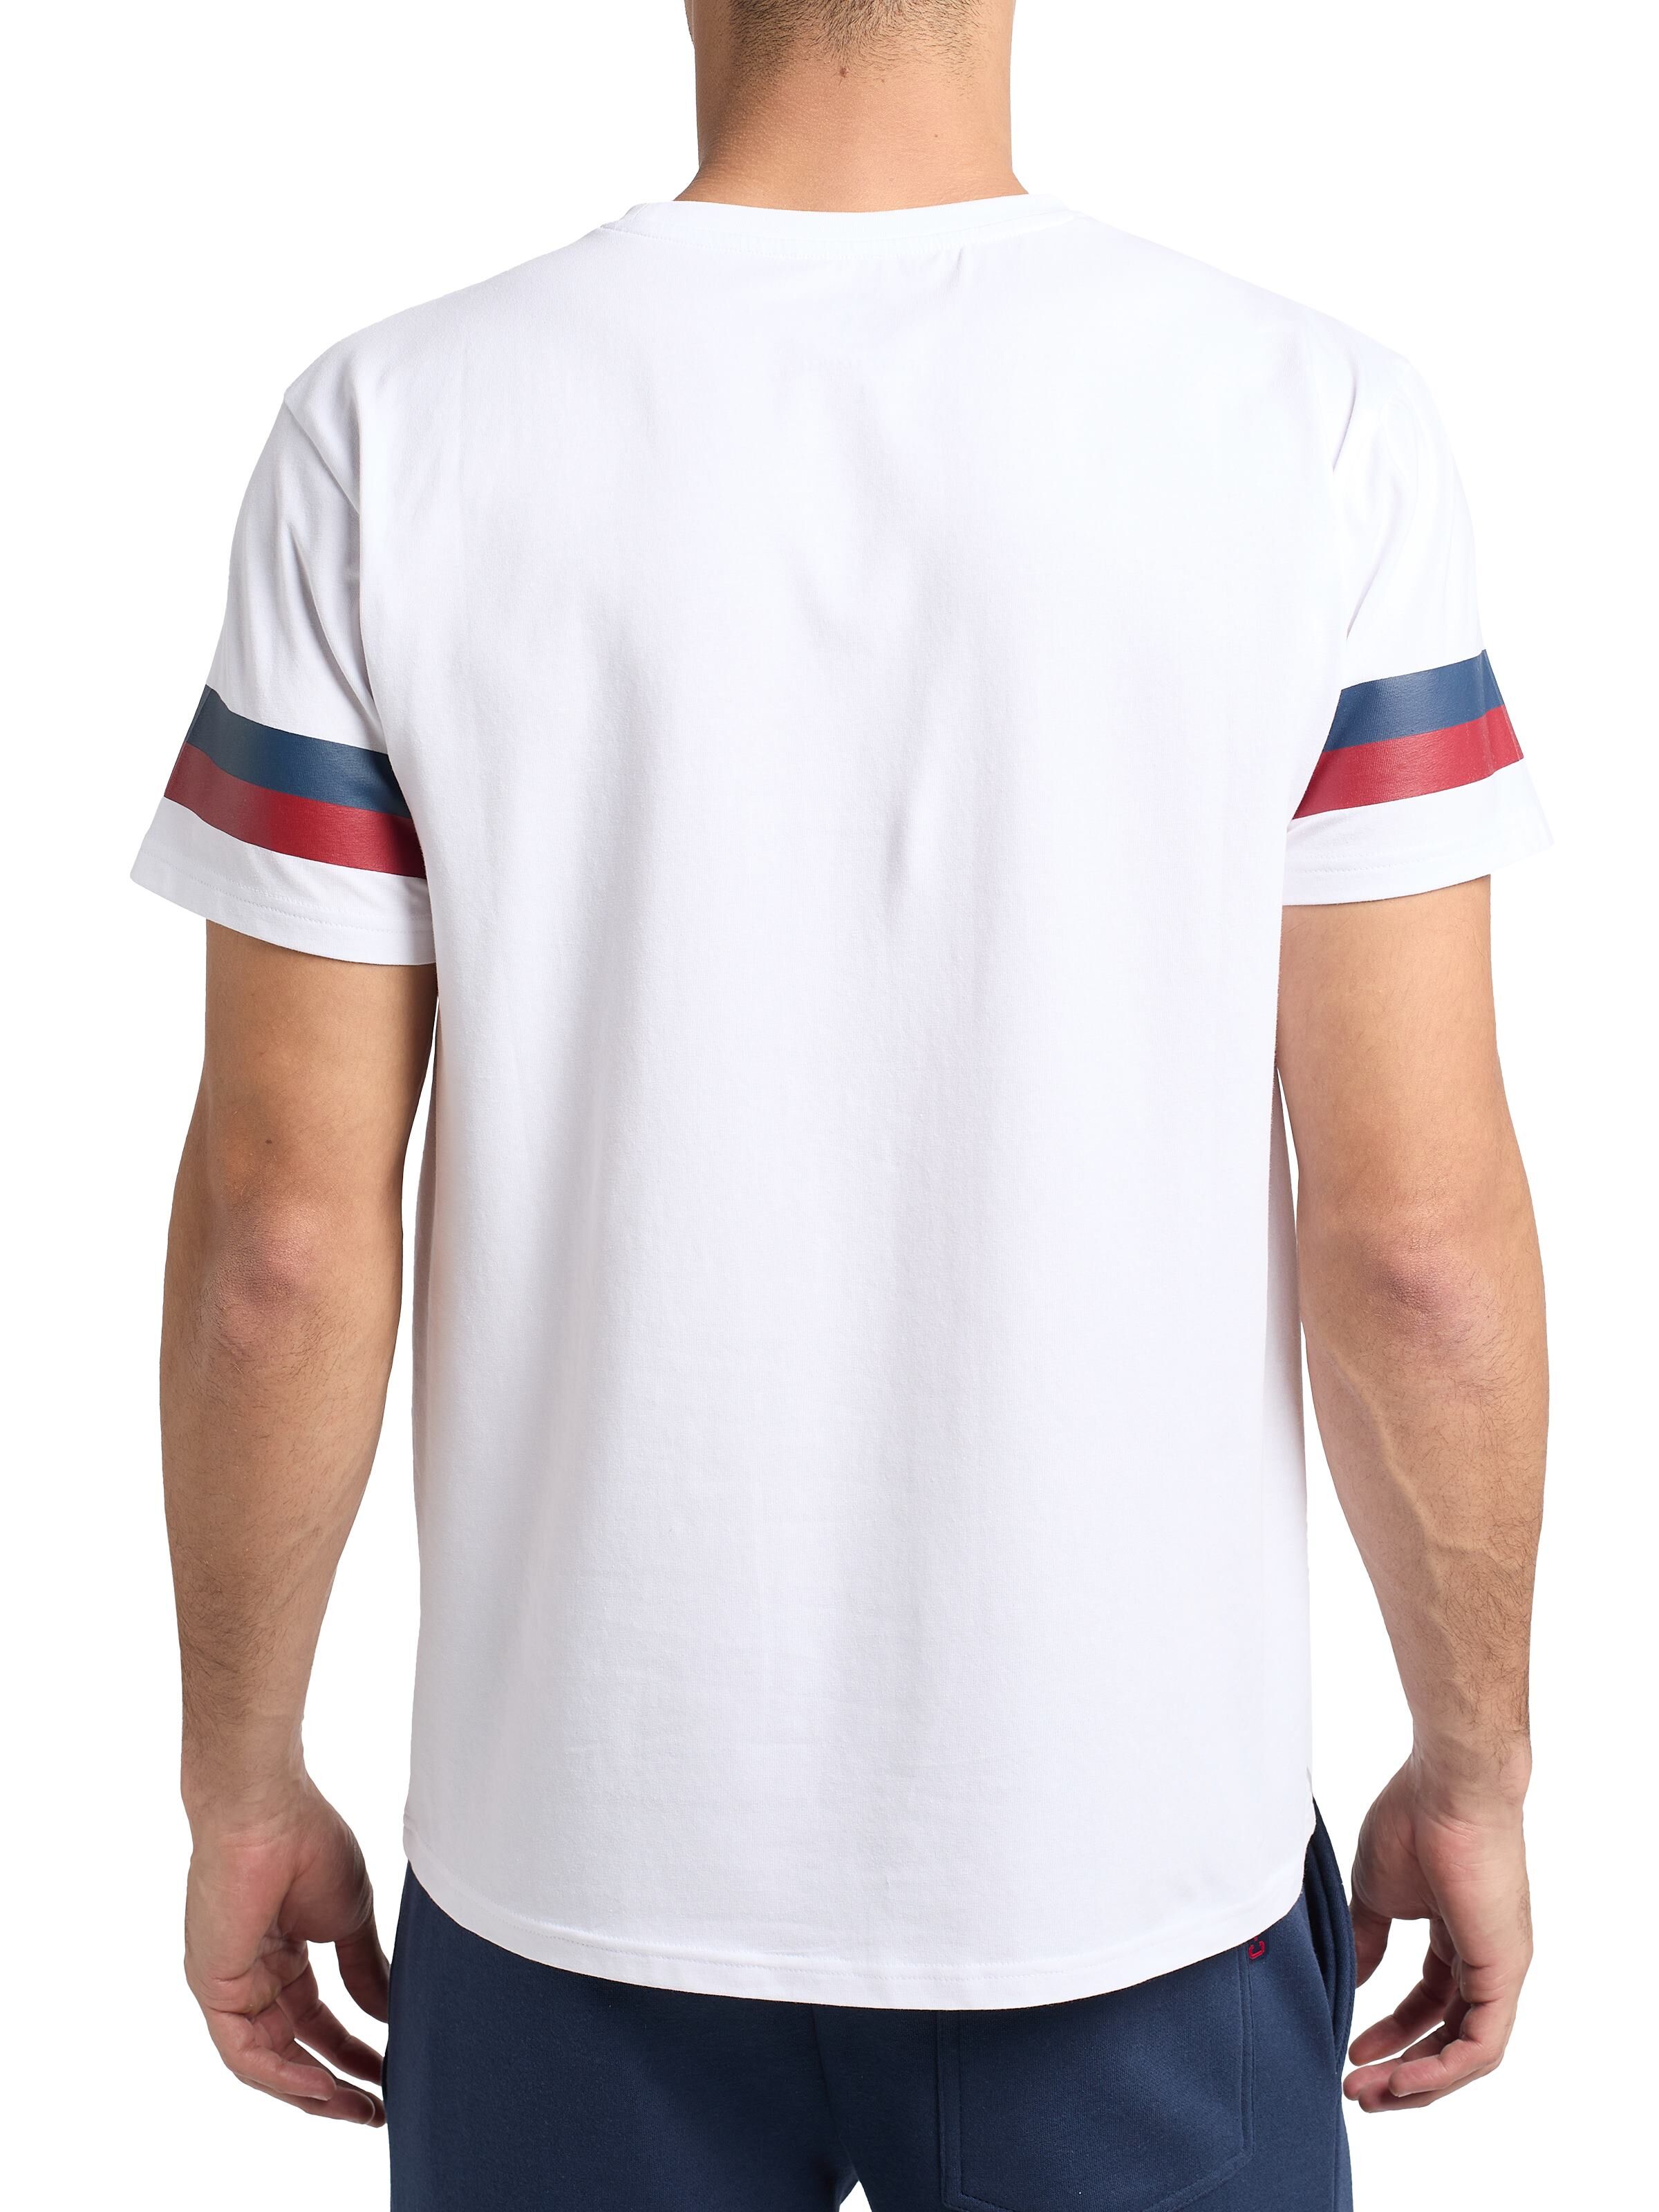 CARLO COLUCCI Atletico T-Shirt